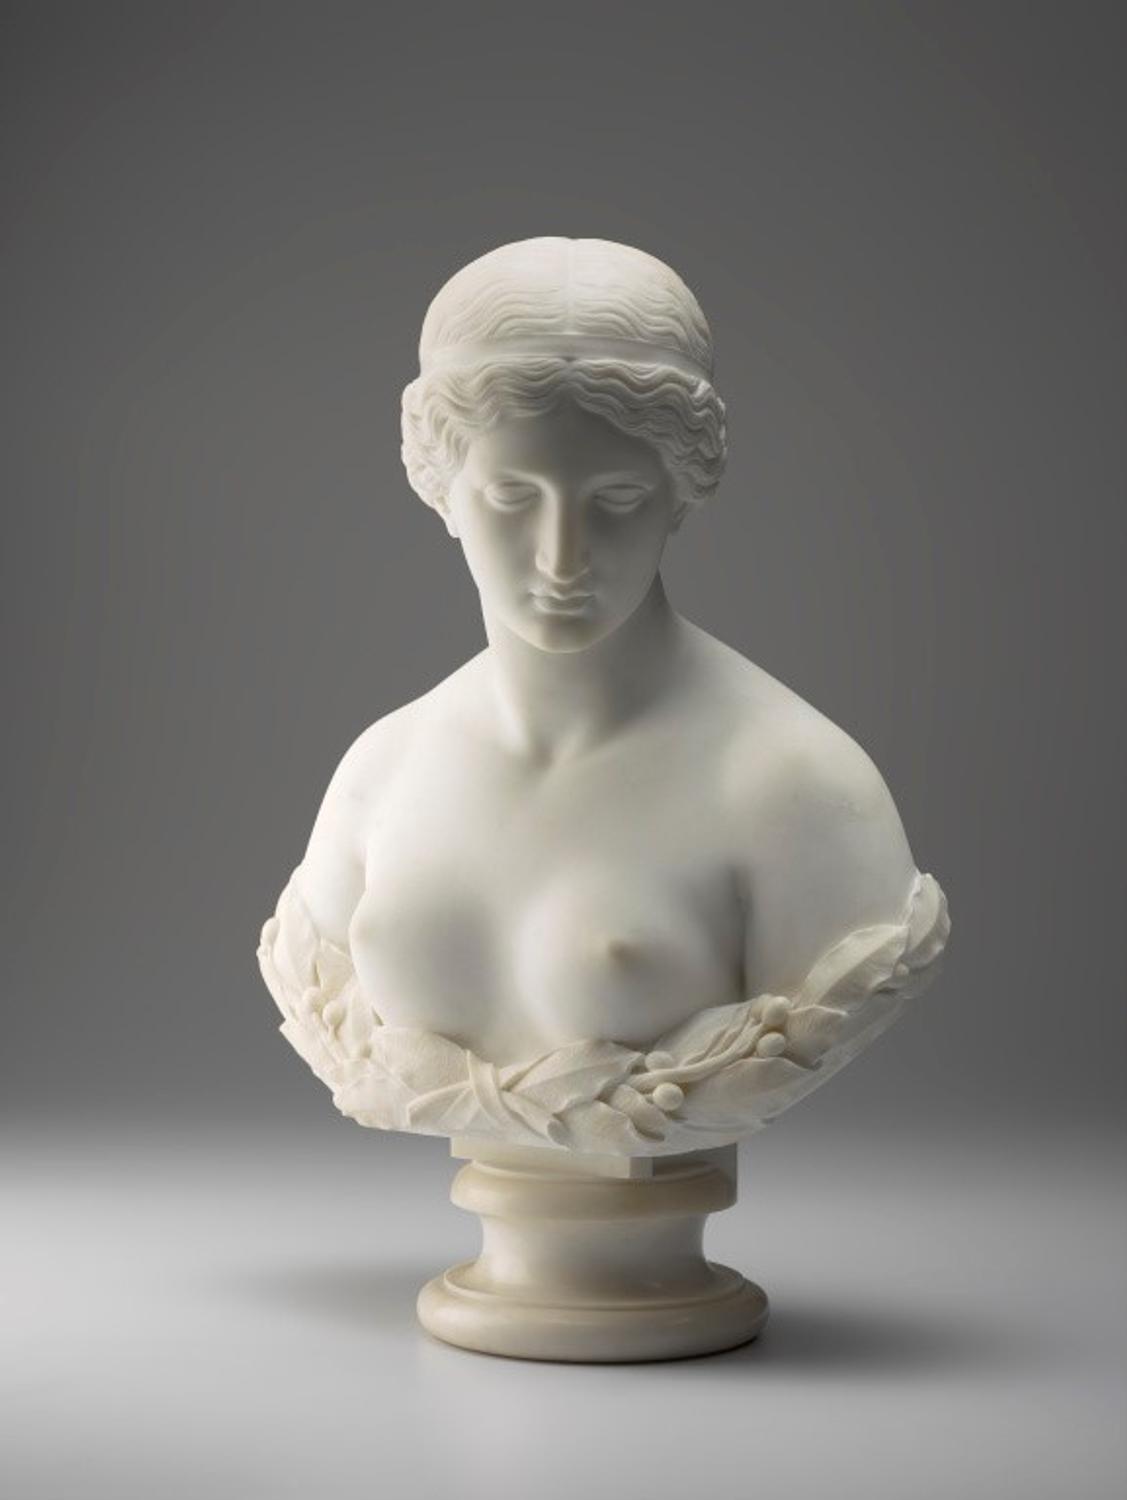 다프네(Daphne) by Harriet Goodhue Hosmer - 1853년에 모델을 만든 후, 조각은 이후에 함 - 71.7 x 52 x 31.8 cm 